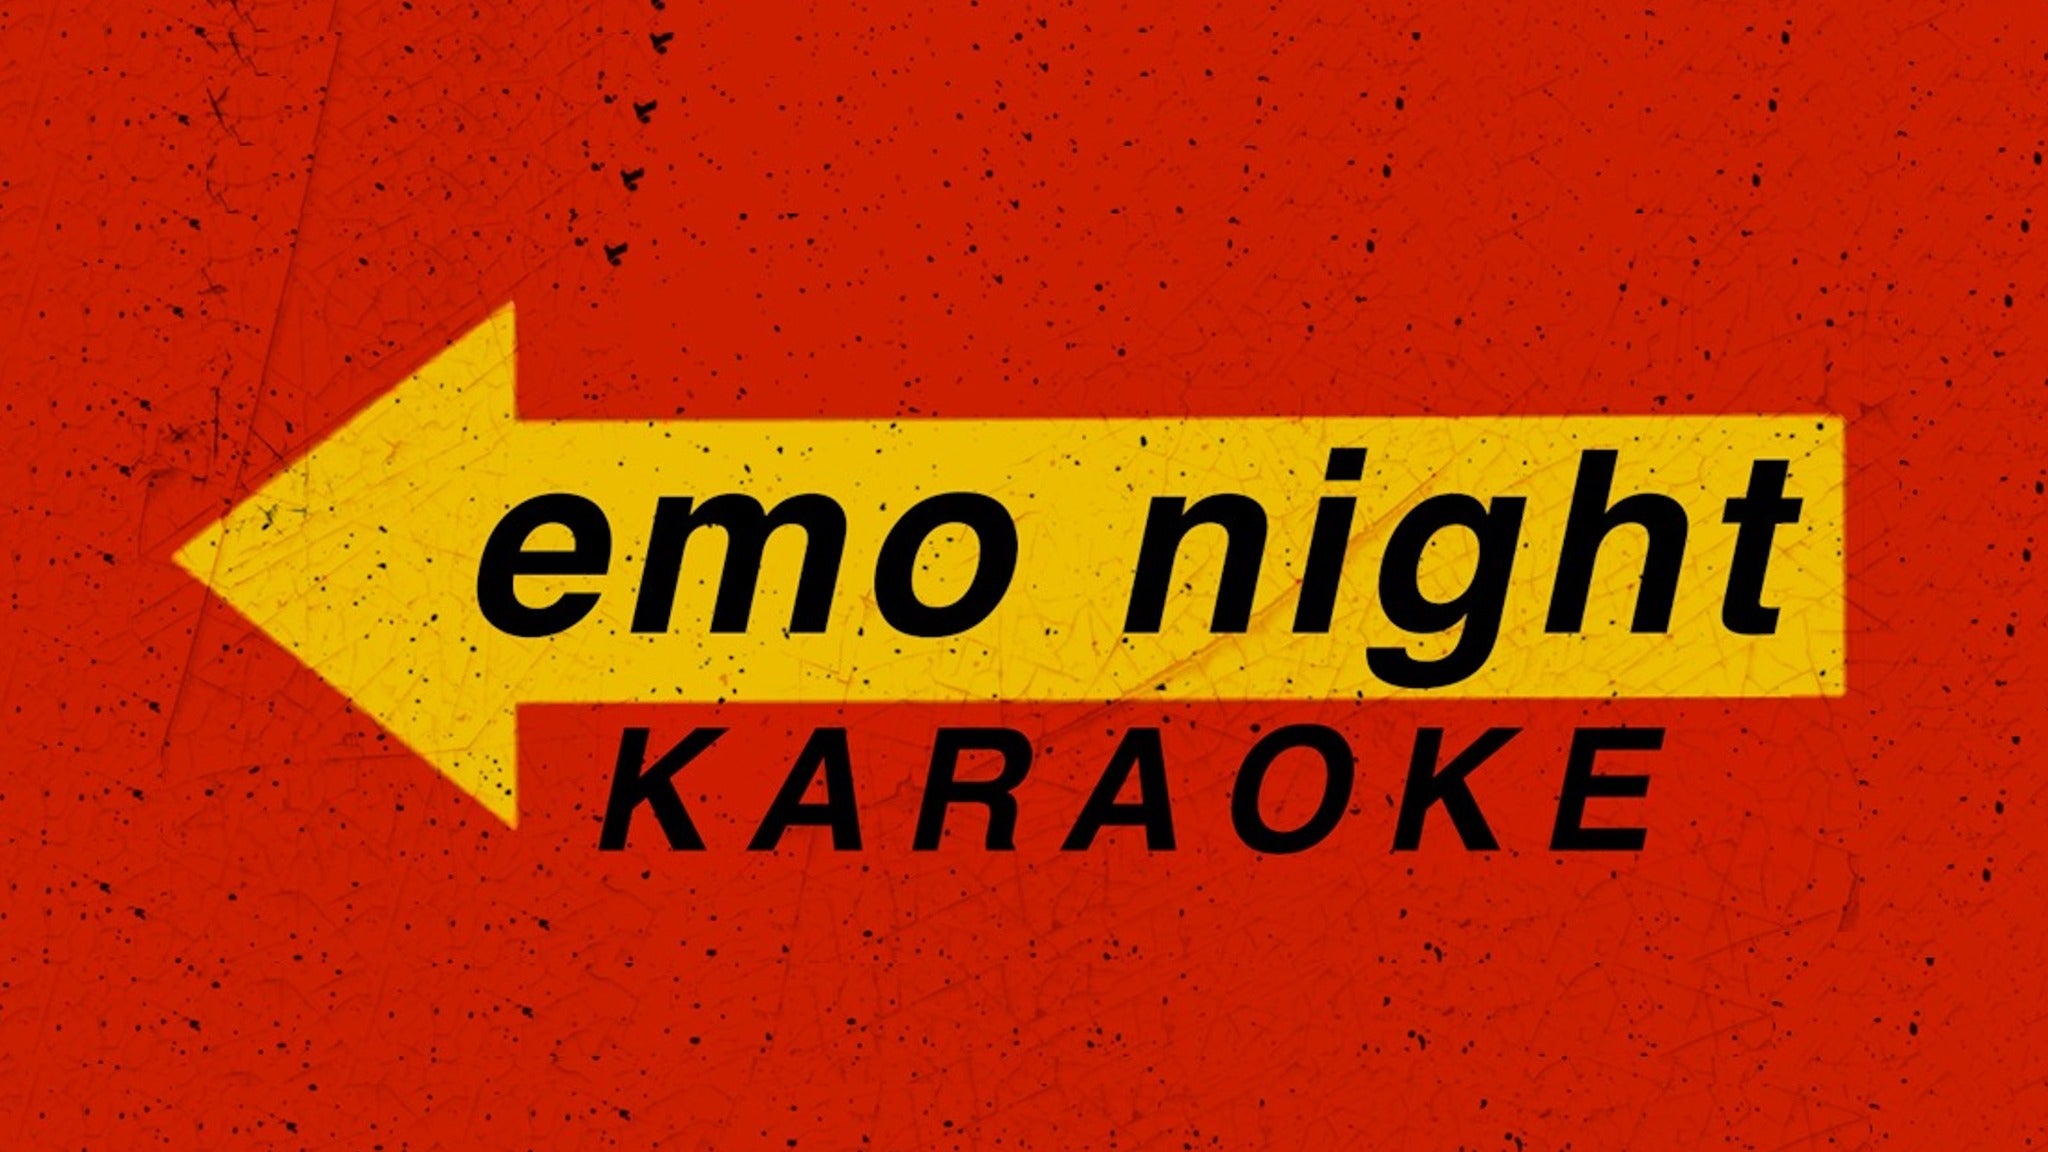 Emo Night Karaoke in New York promo photo for Citi Cardmember presale offer code